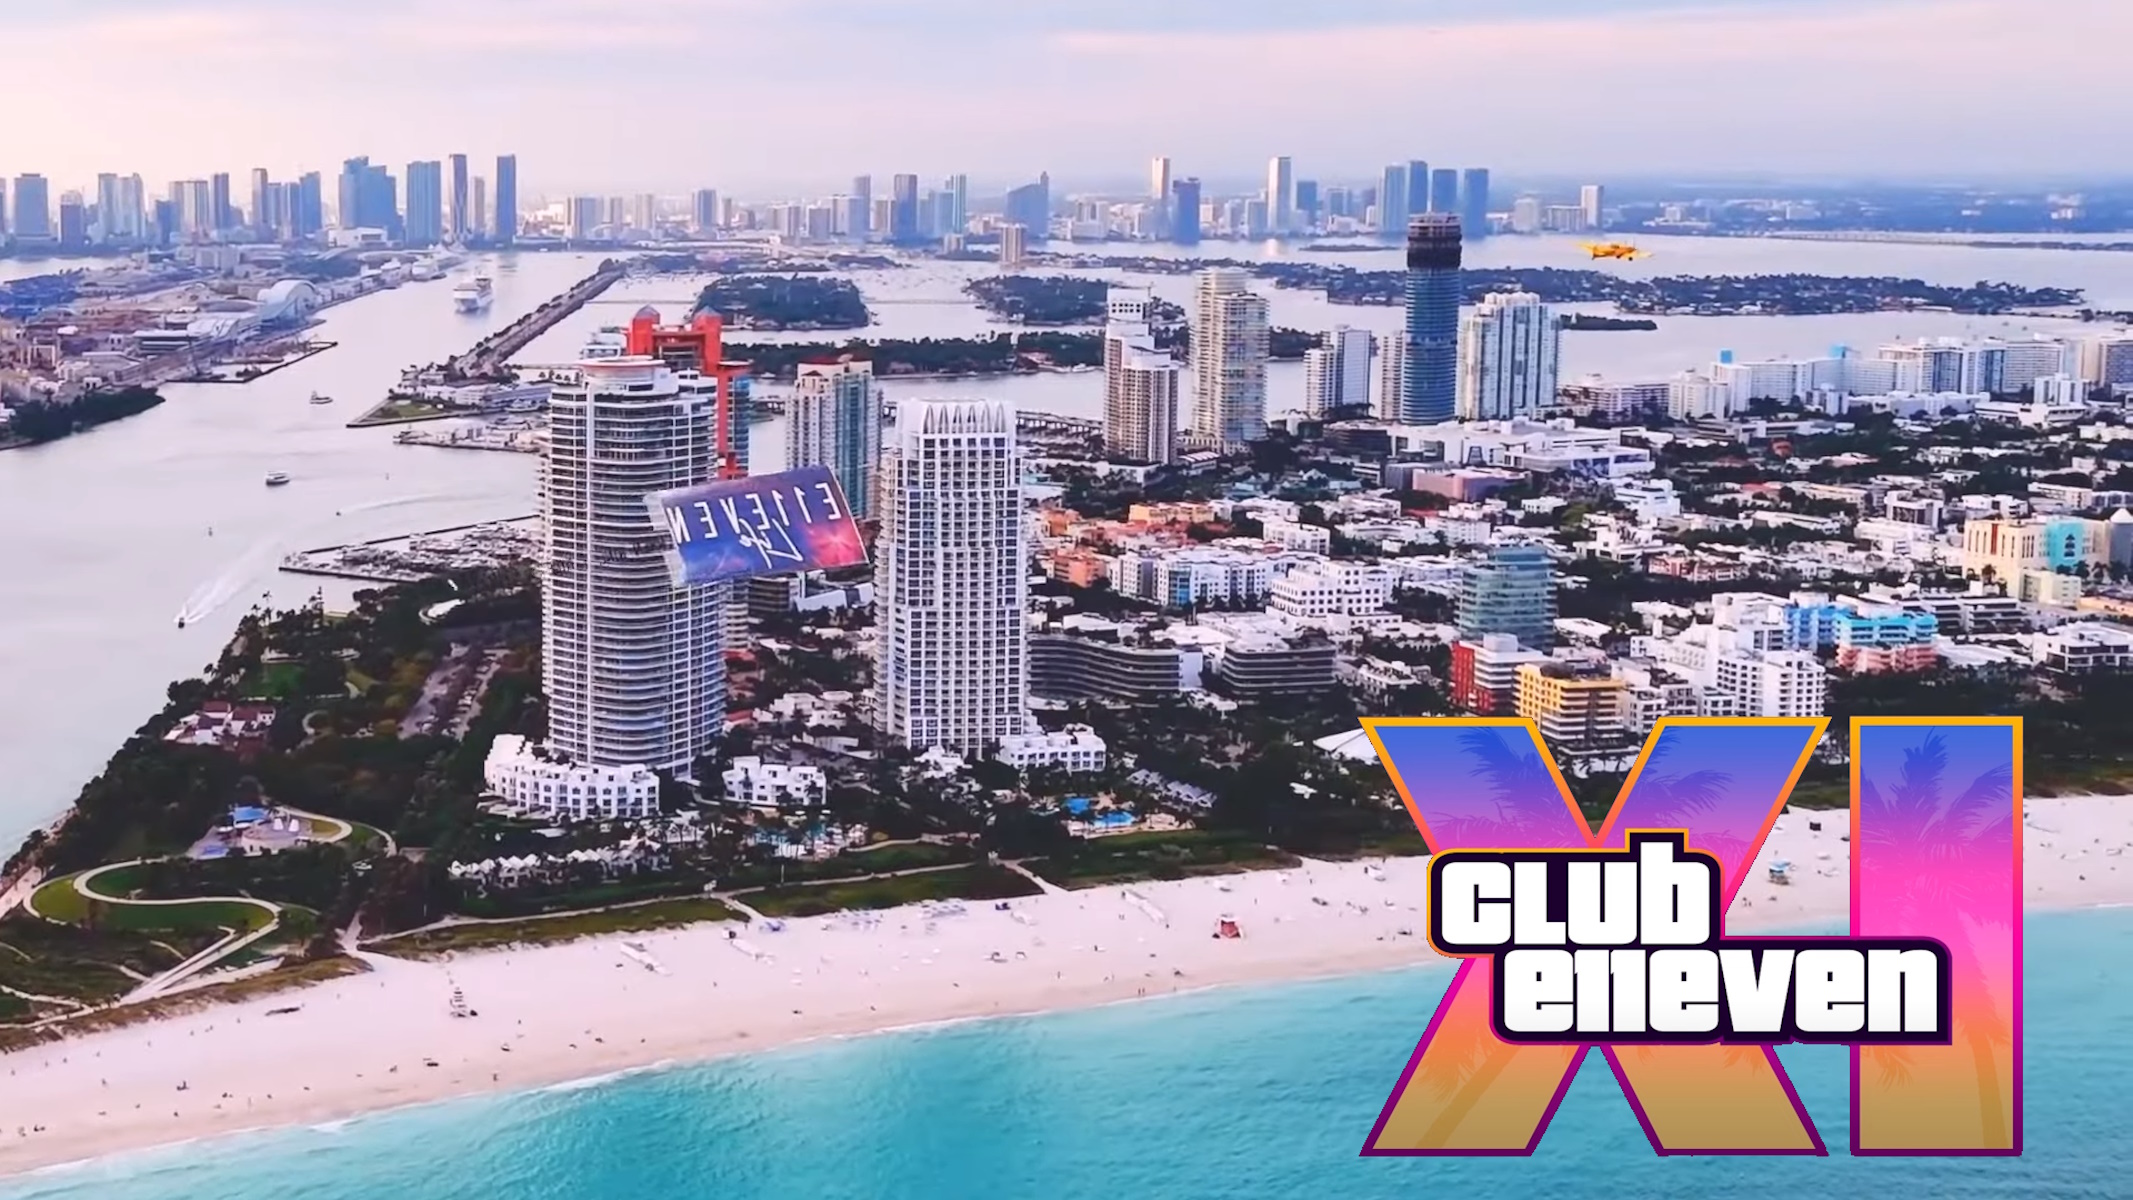 Club E11even Miami parodia video del trailer di GTA 6